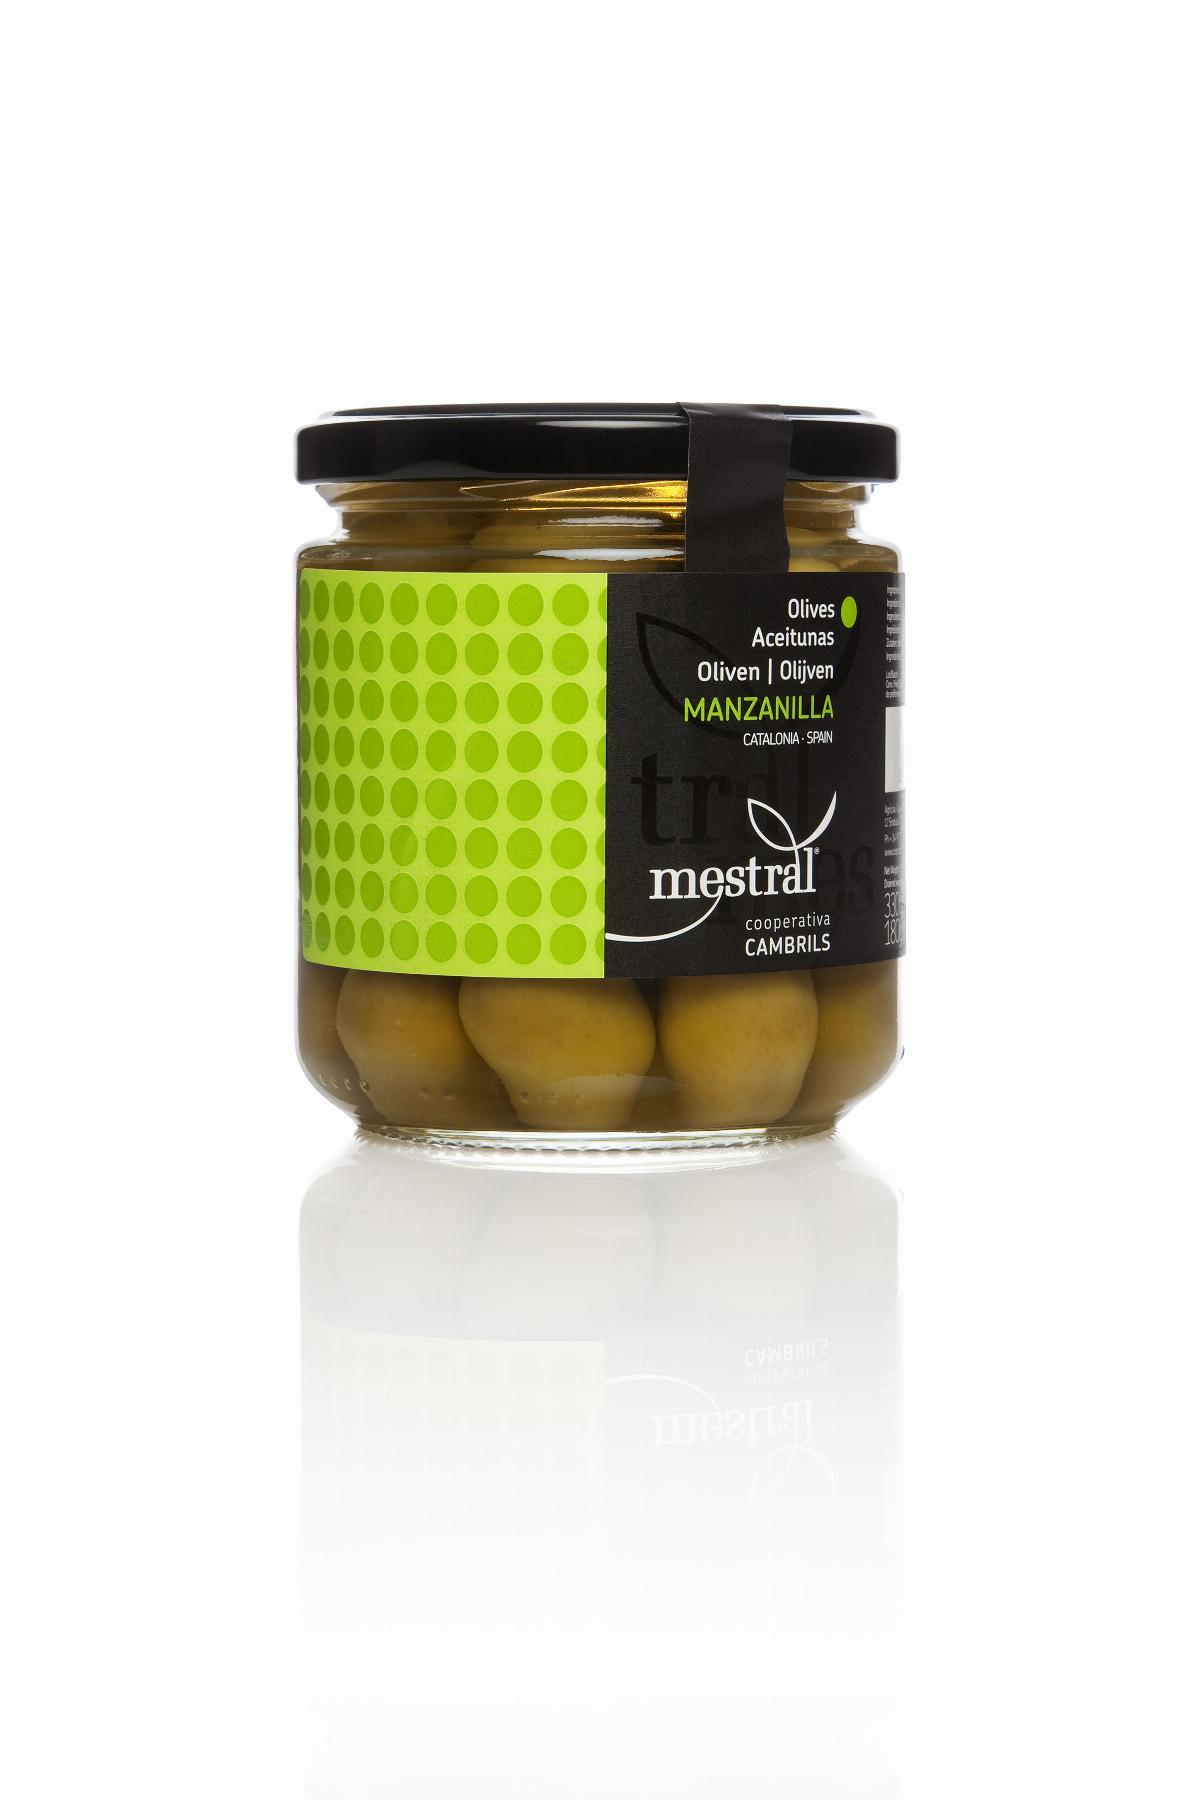 Olives - Mestral Manzanilla green olives, glass jar 200g - Mestral Cambrils